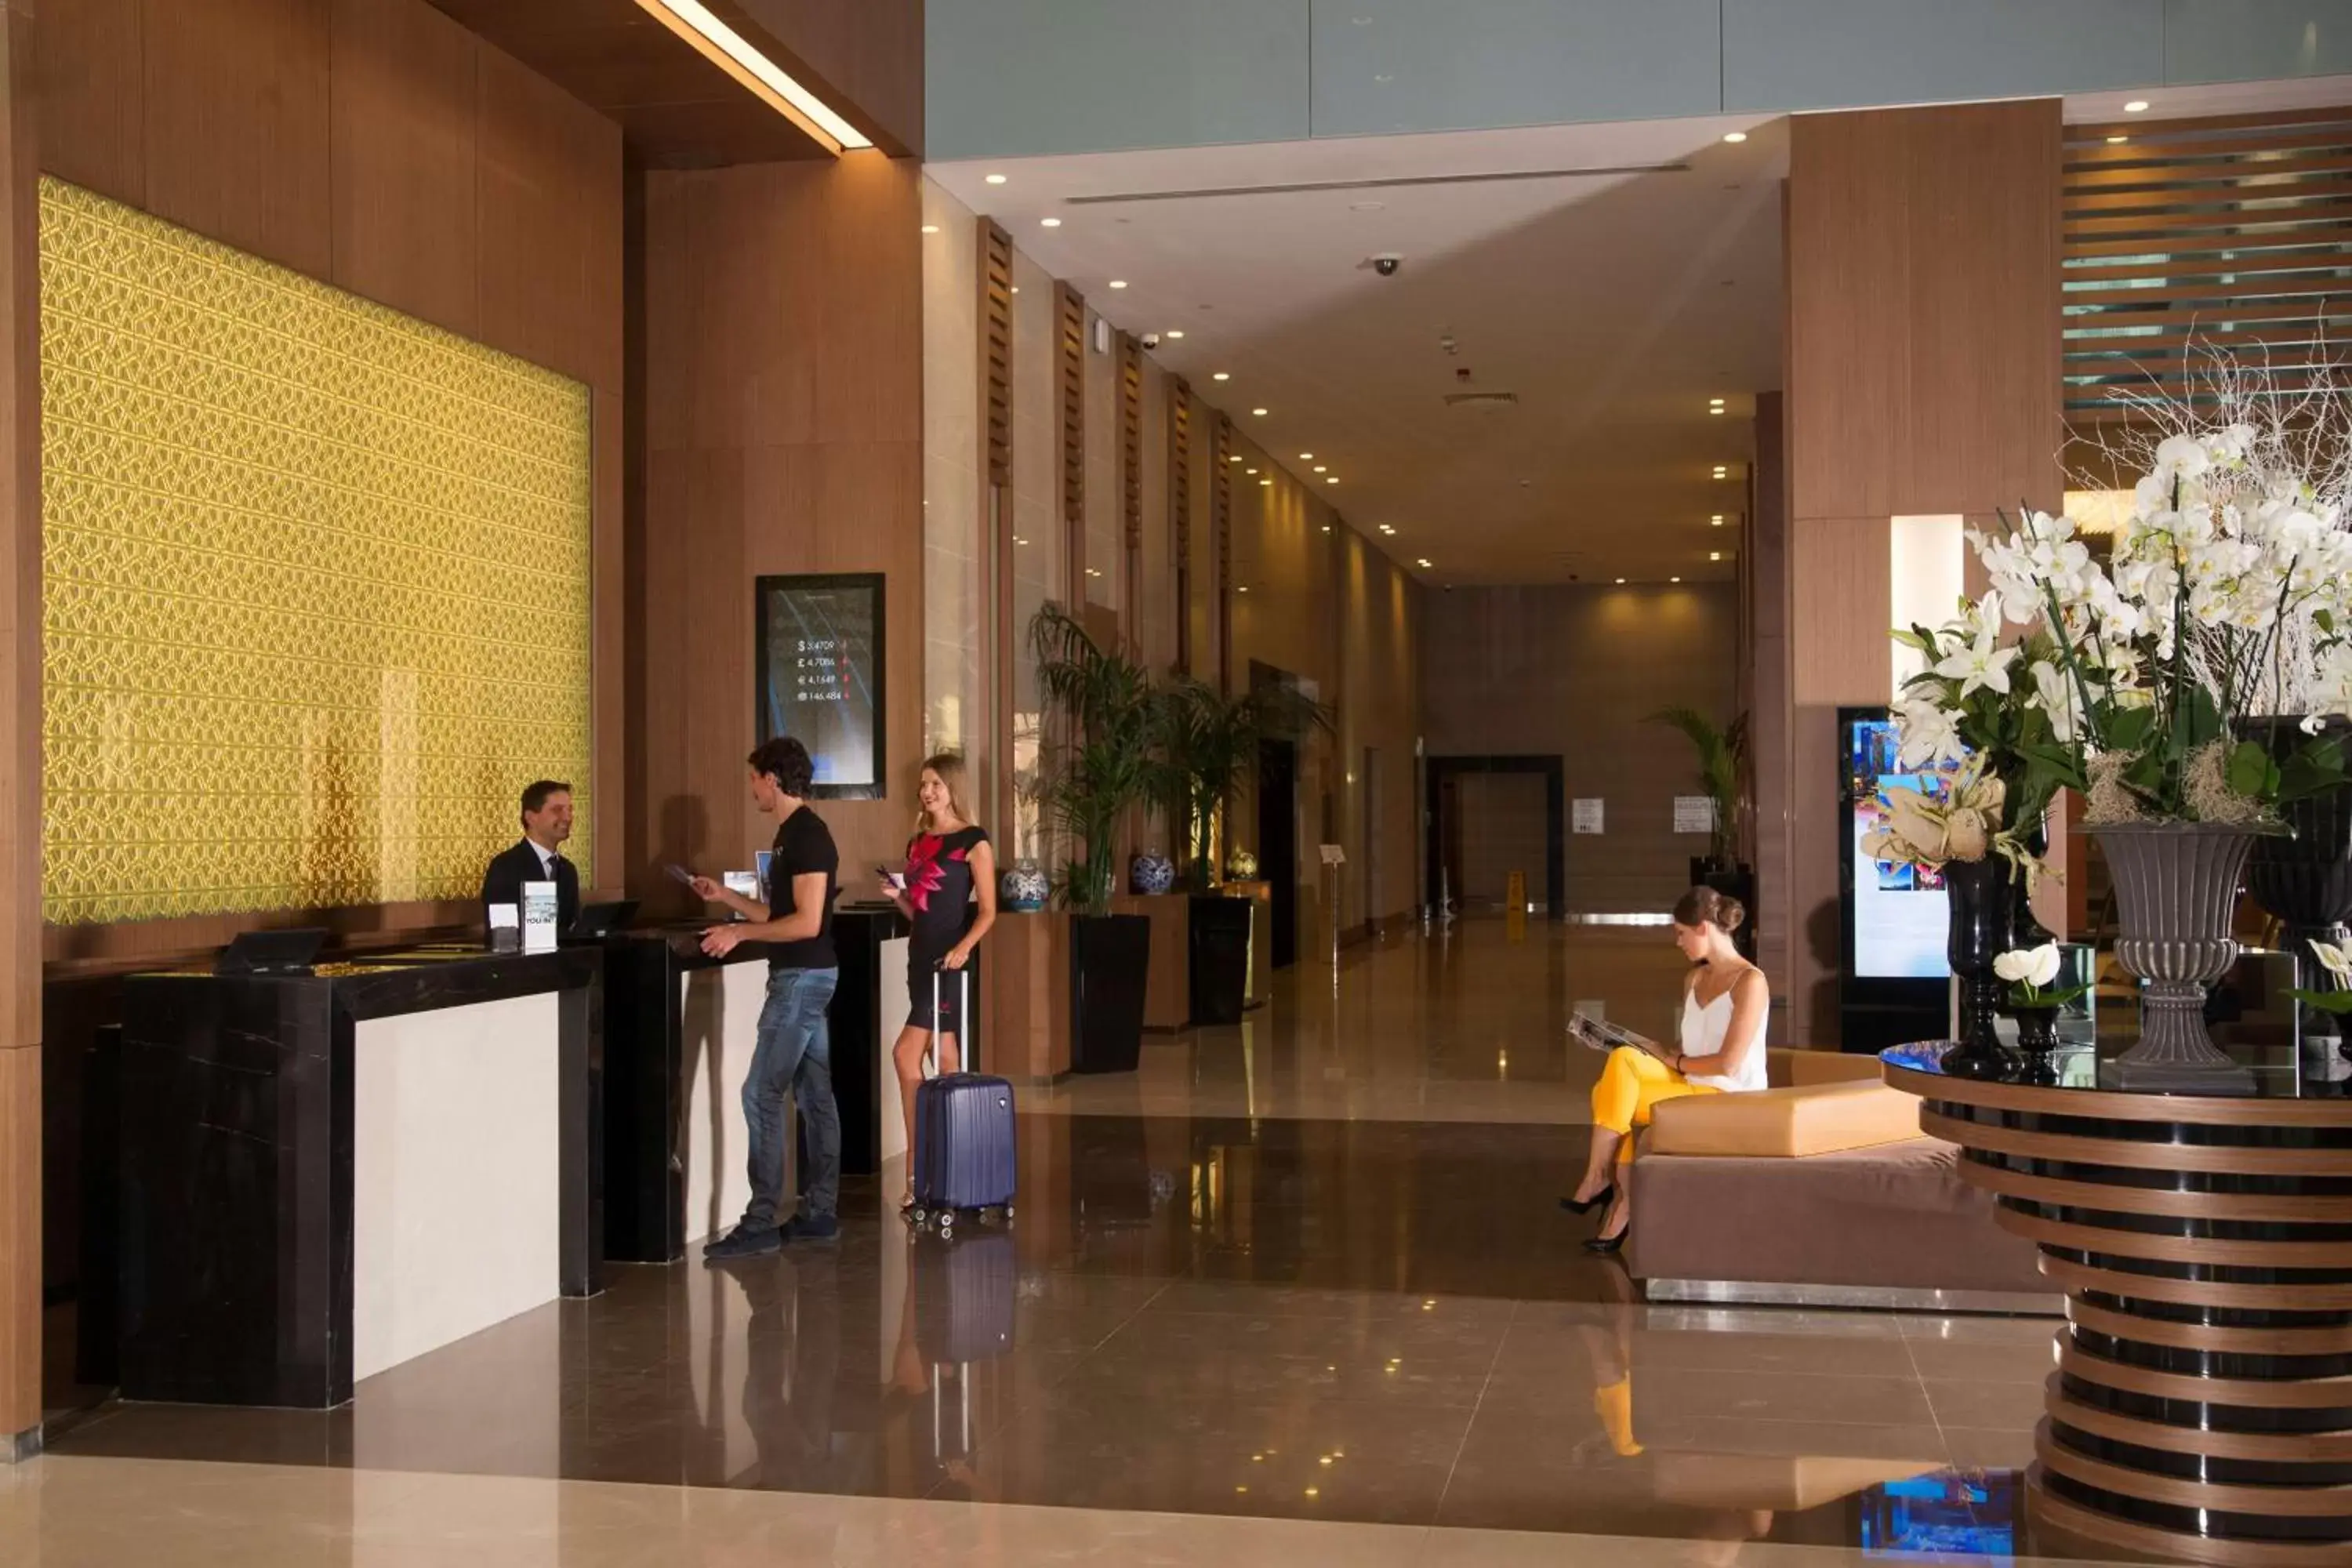 Lobby or reception, Lobby/Reception in Radisson Blu Hotel, Kayseri